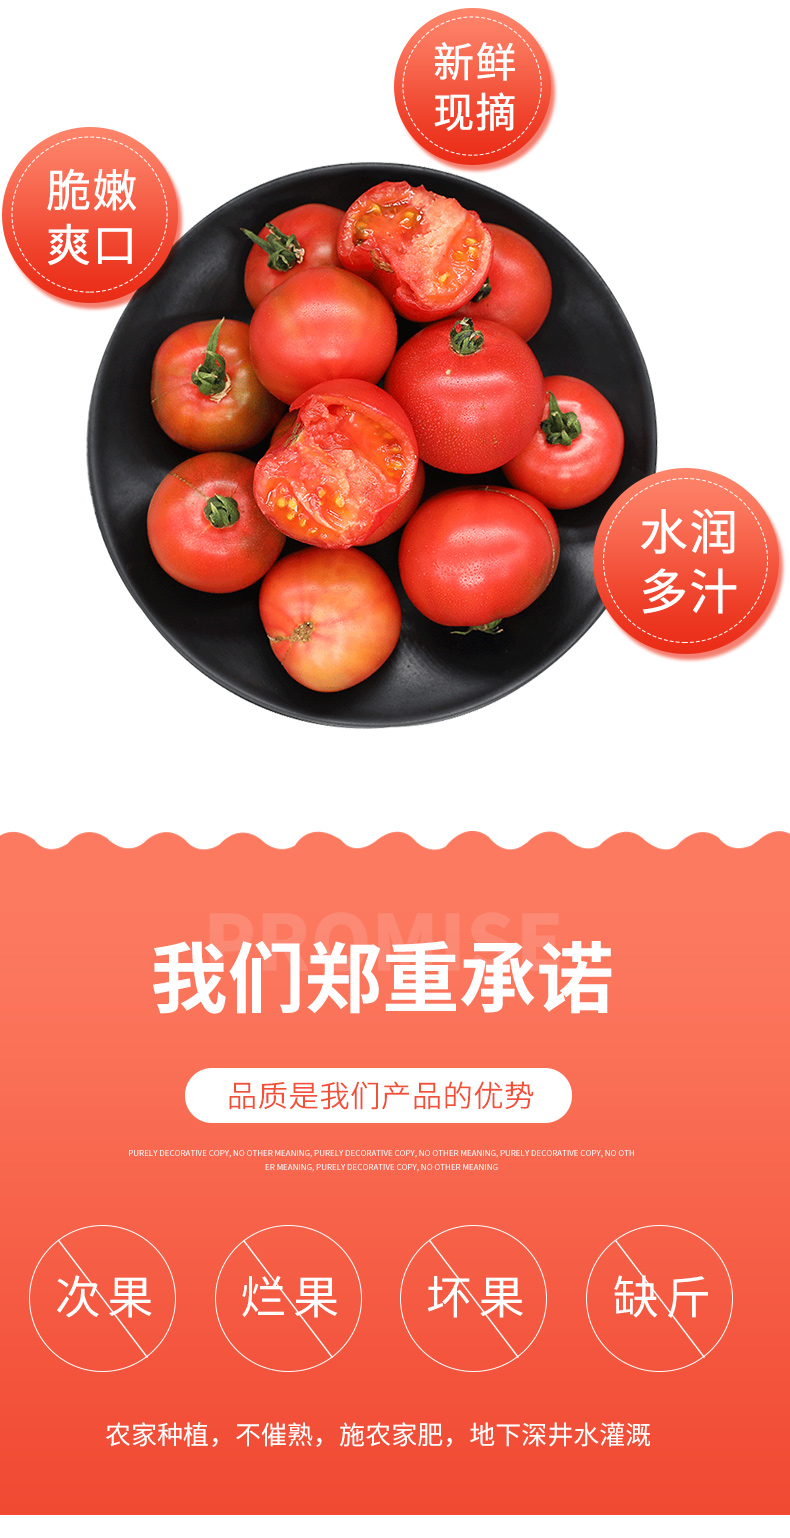  【北京优农】密之蓝天密云本地原味番茄   邮政农品